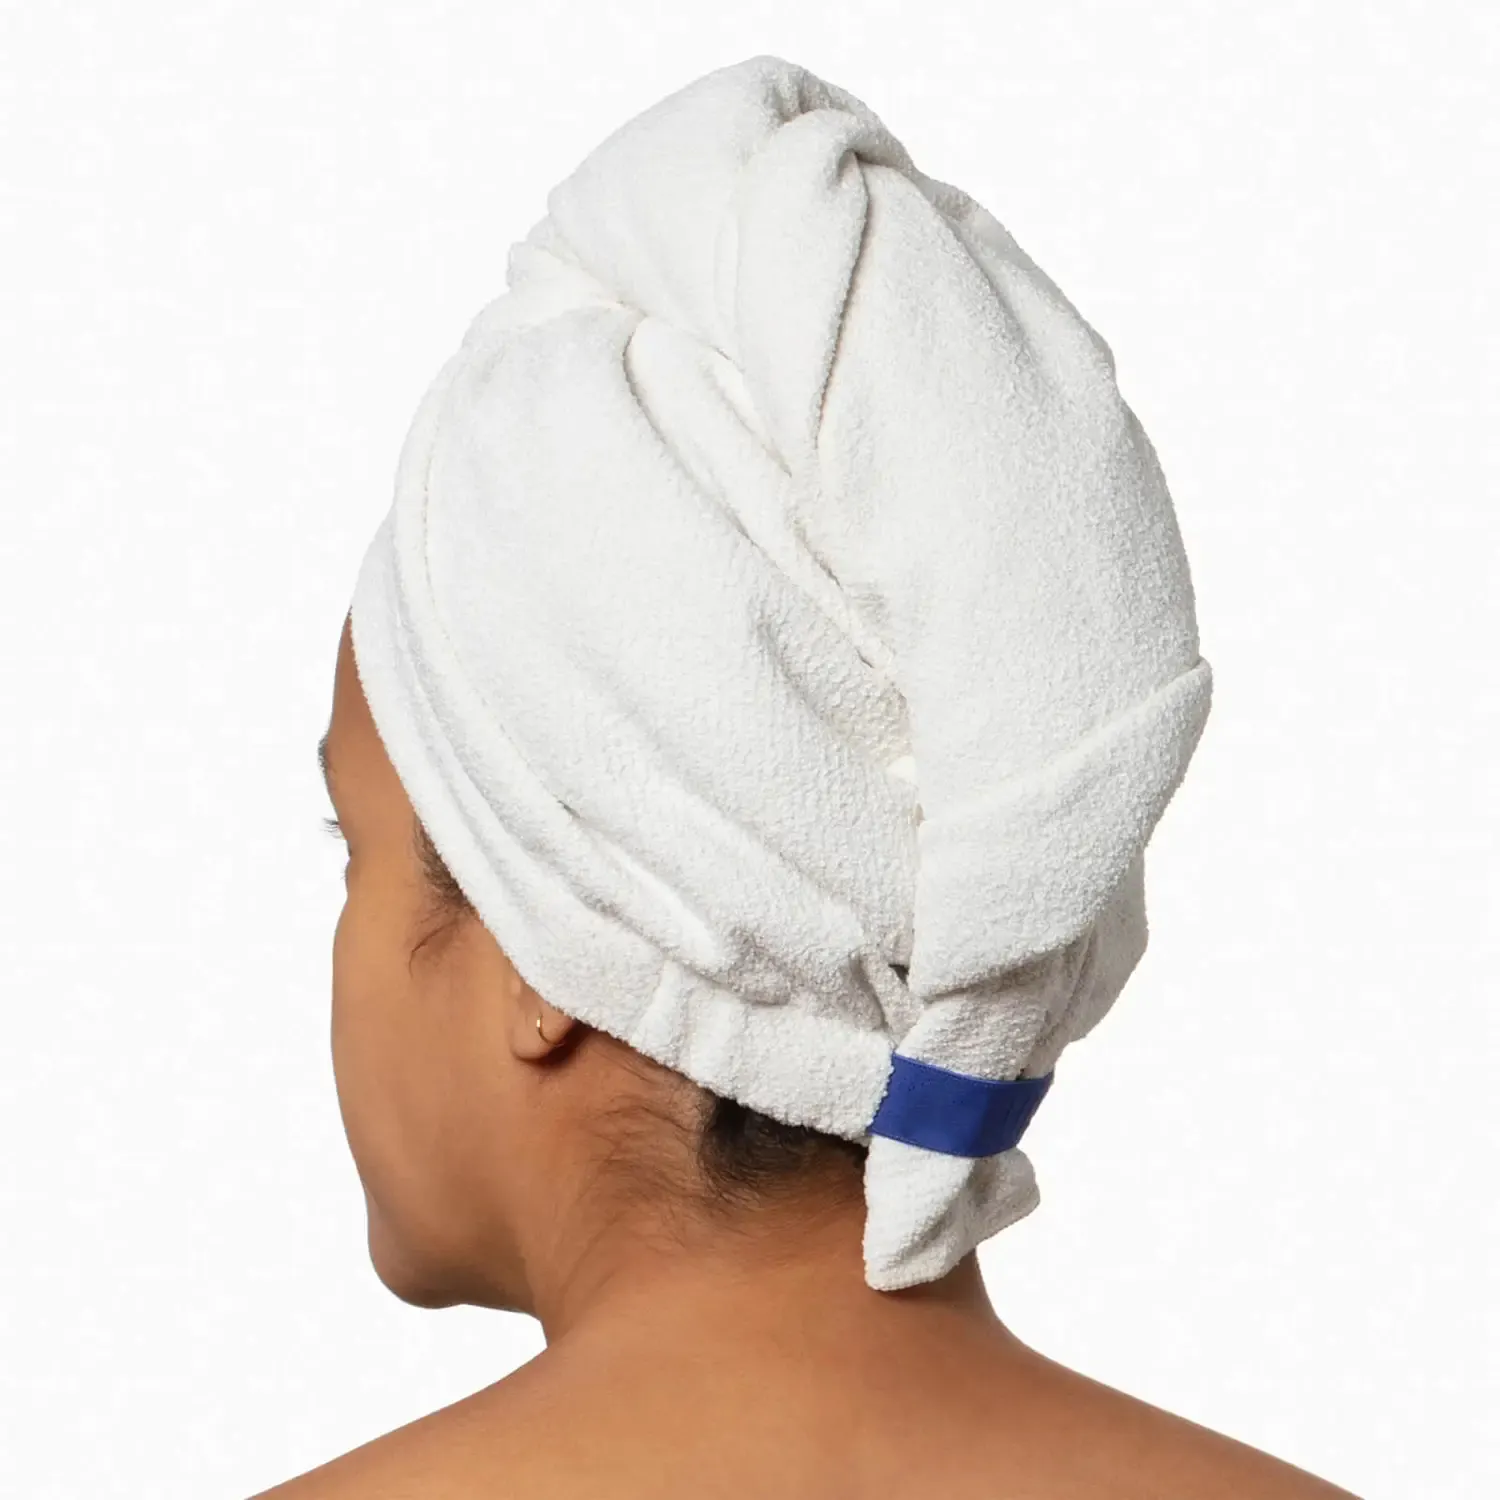 Nouveau mèche ultra absorbant serviette douche tissu bonnet fourmi tissu 5A antibactérien recyclé microfibre cheveux secs bonnet